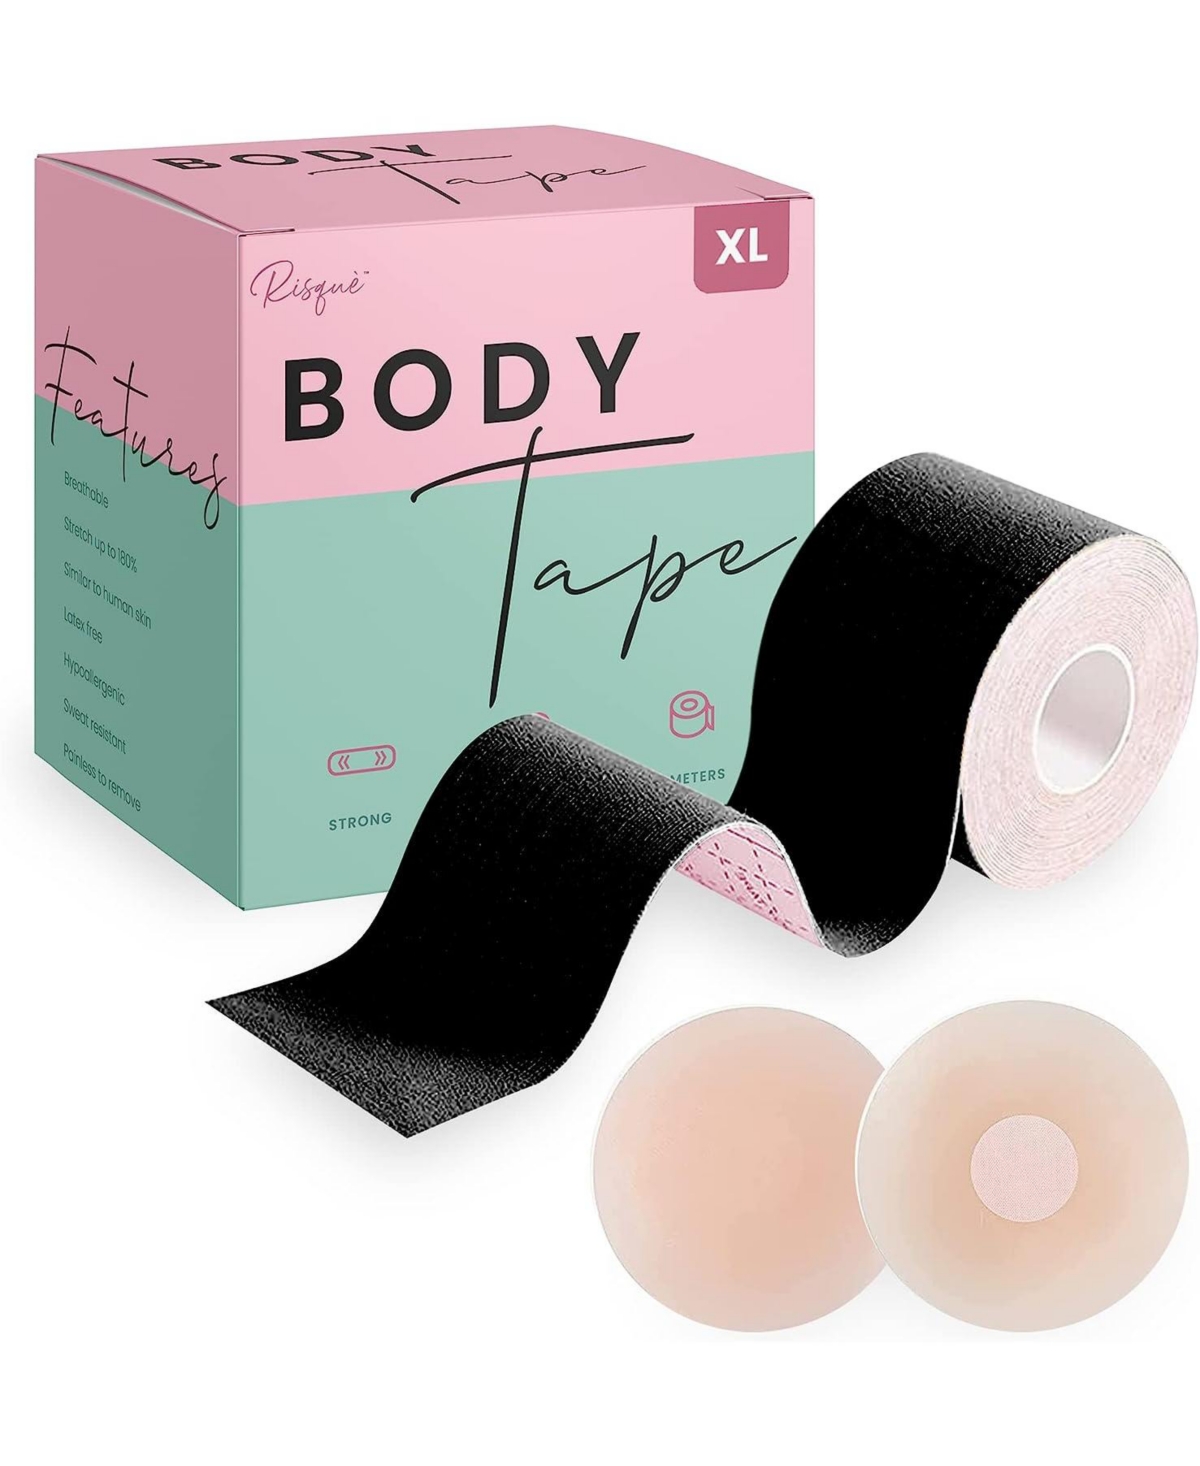 Plus Size Xl Black Breast Lift Tape, 1roll - Beige/khaki